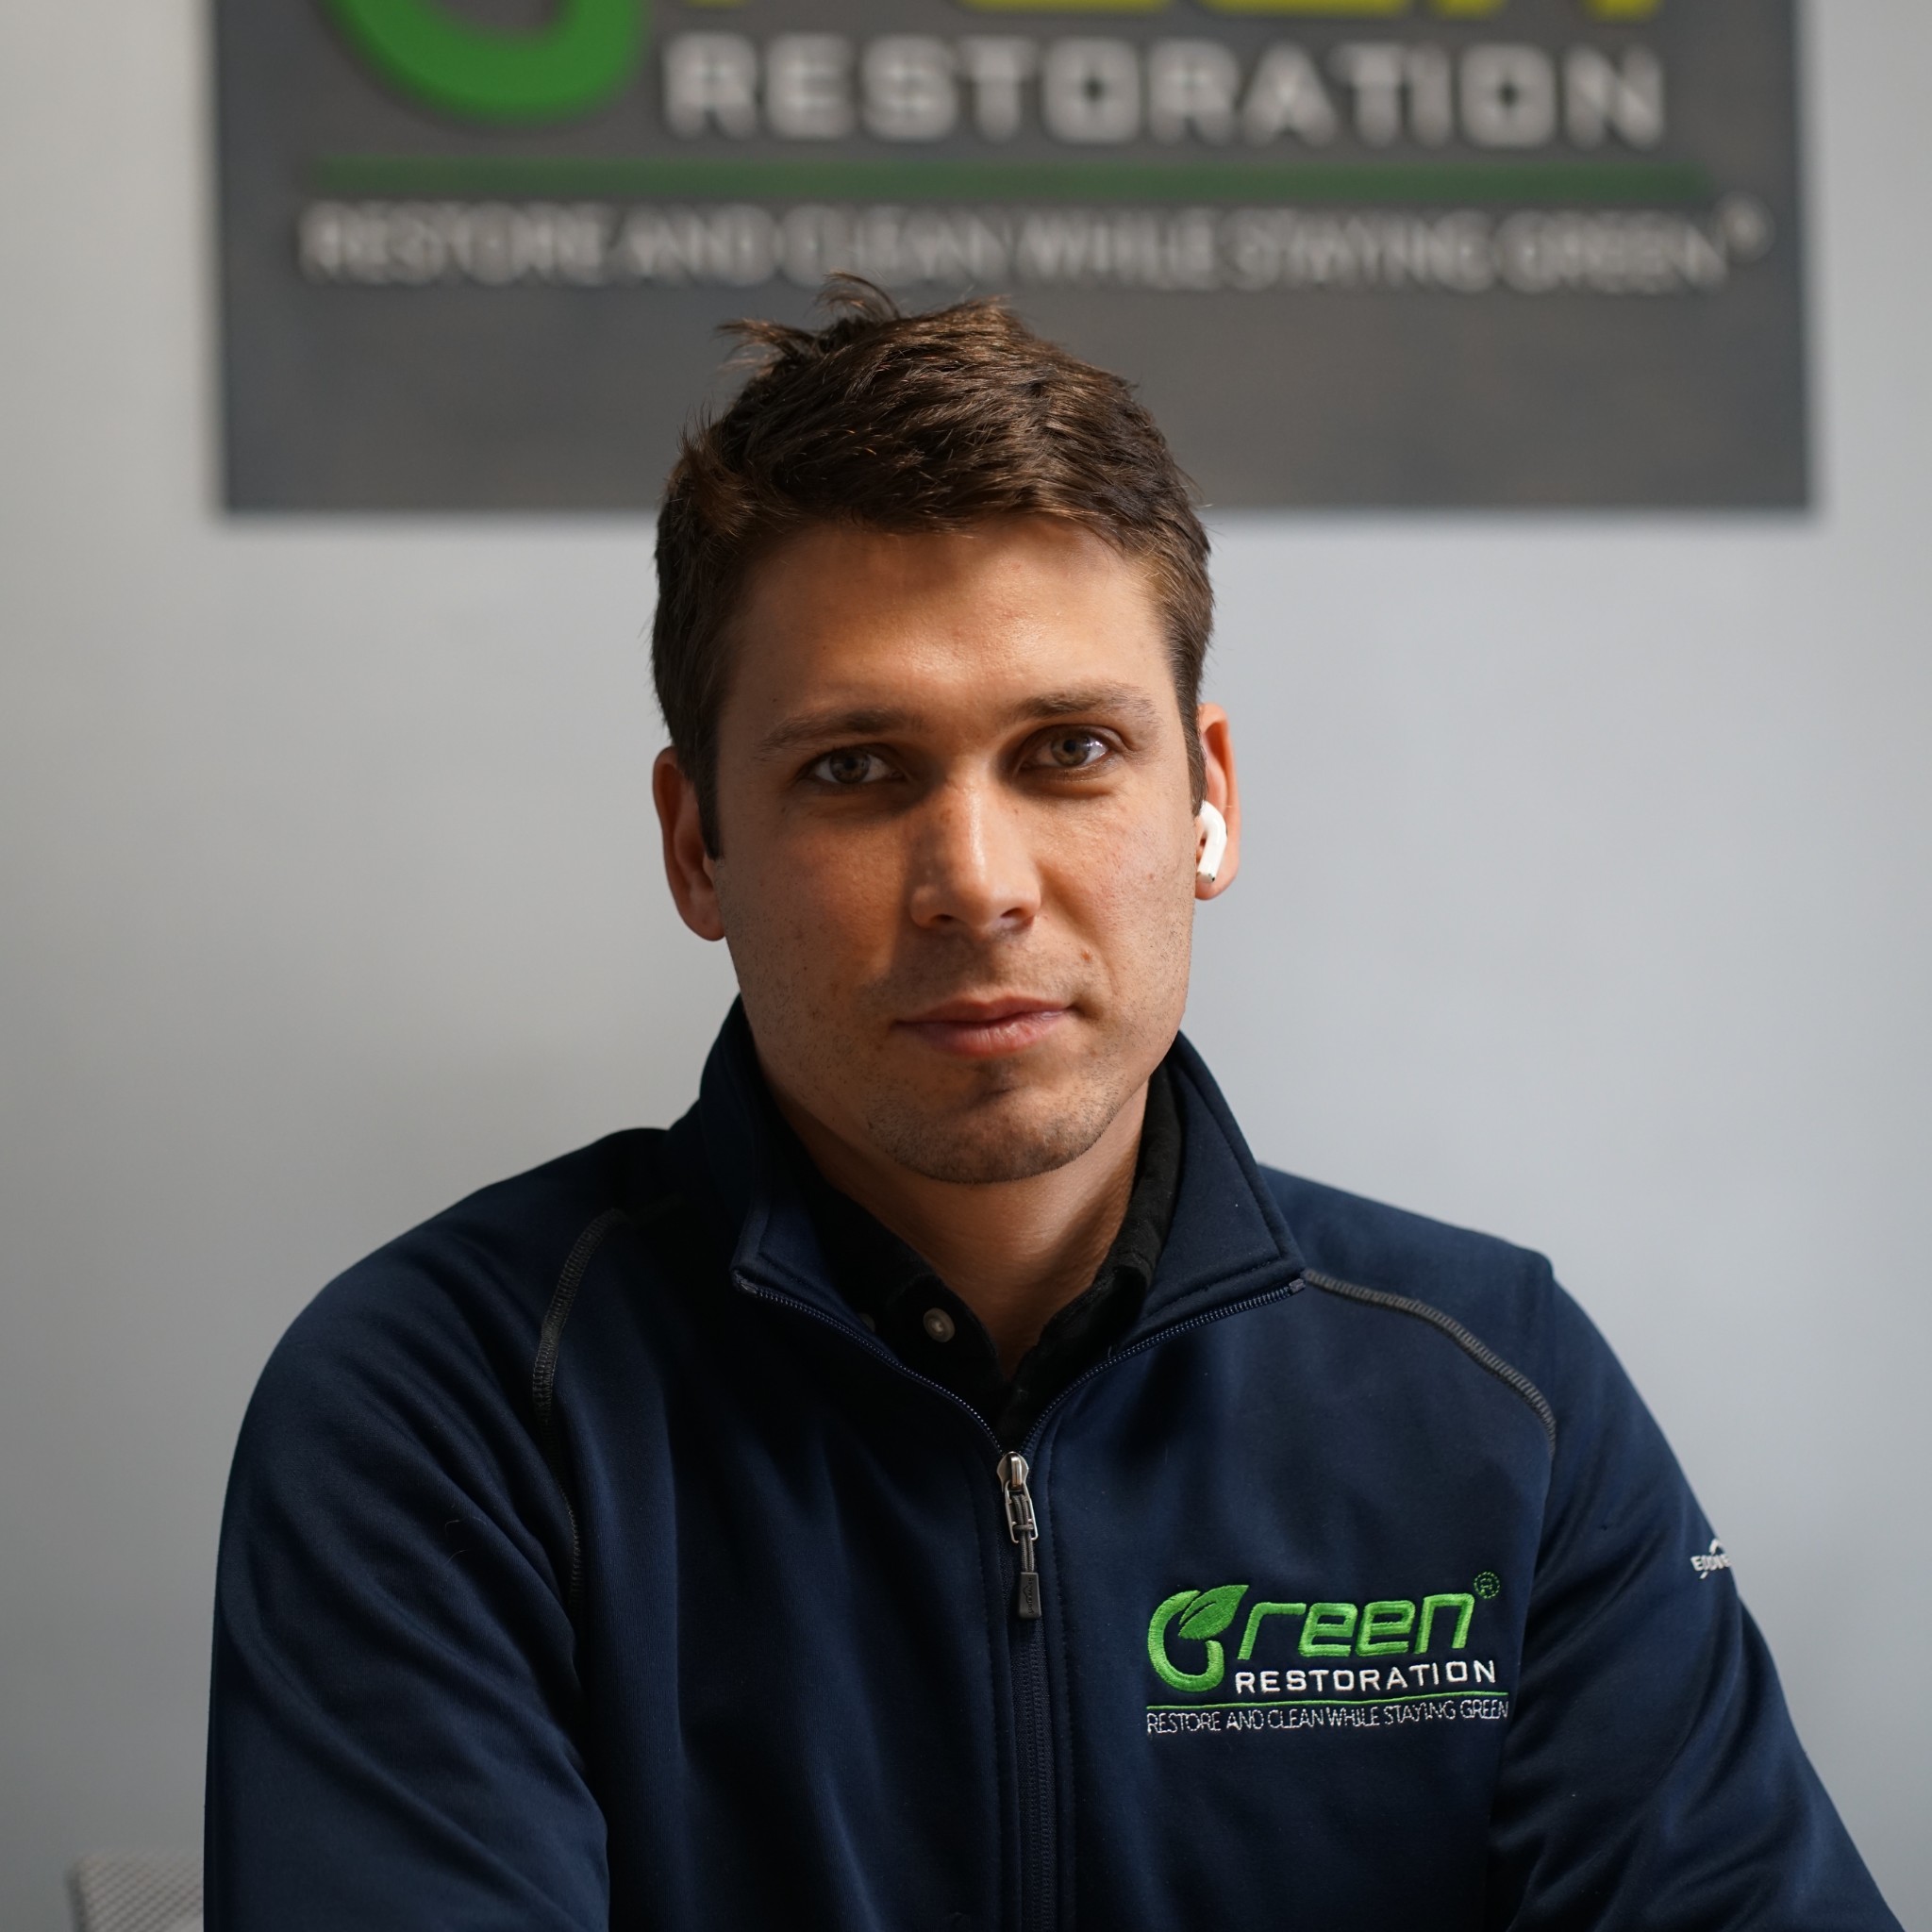 Gene Smirnov Go Green Restoration